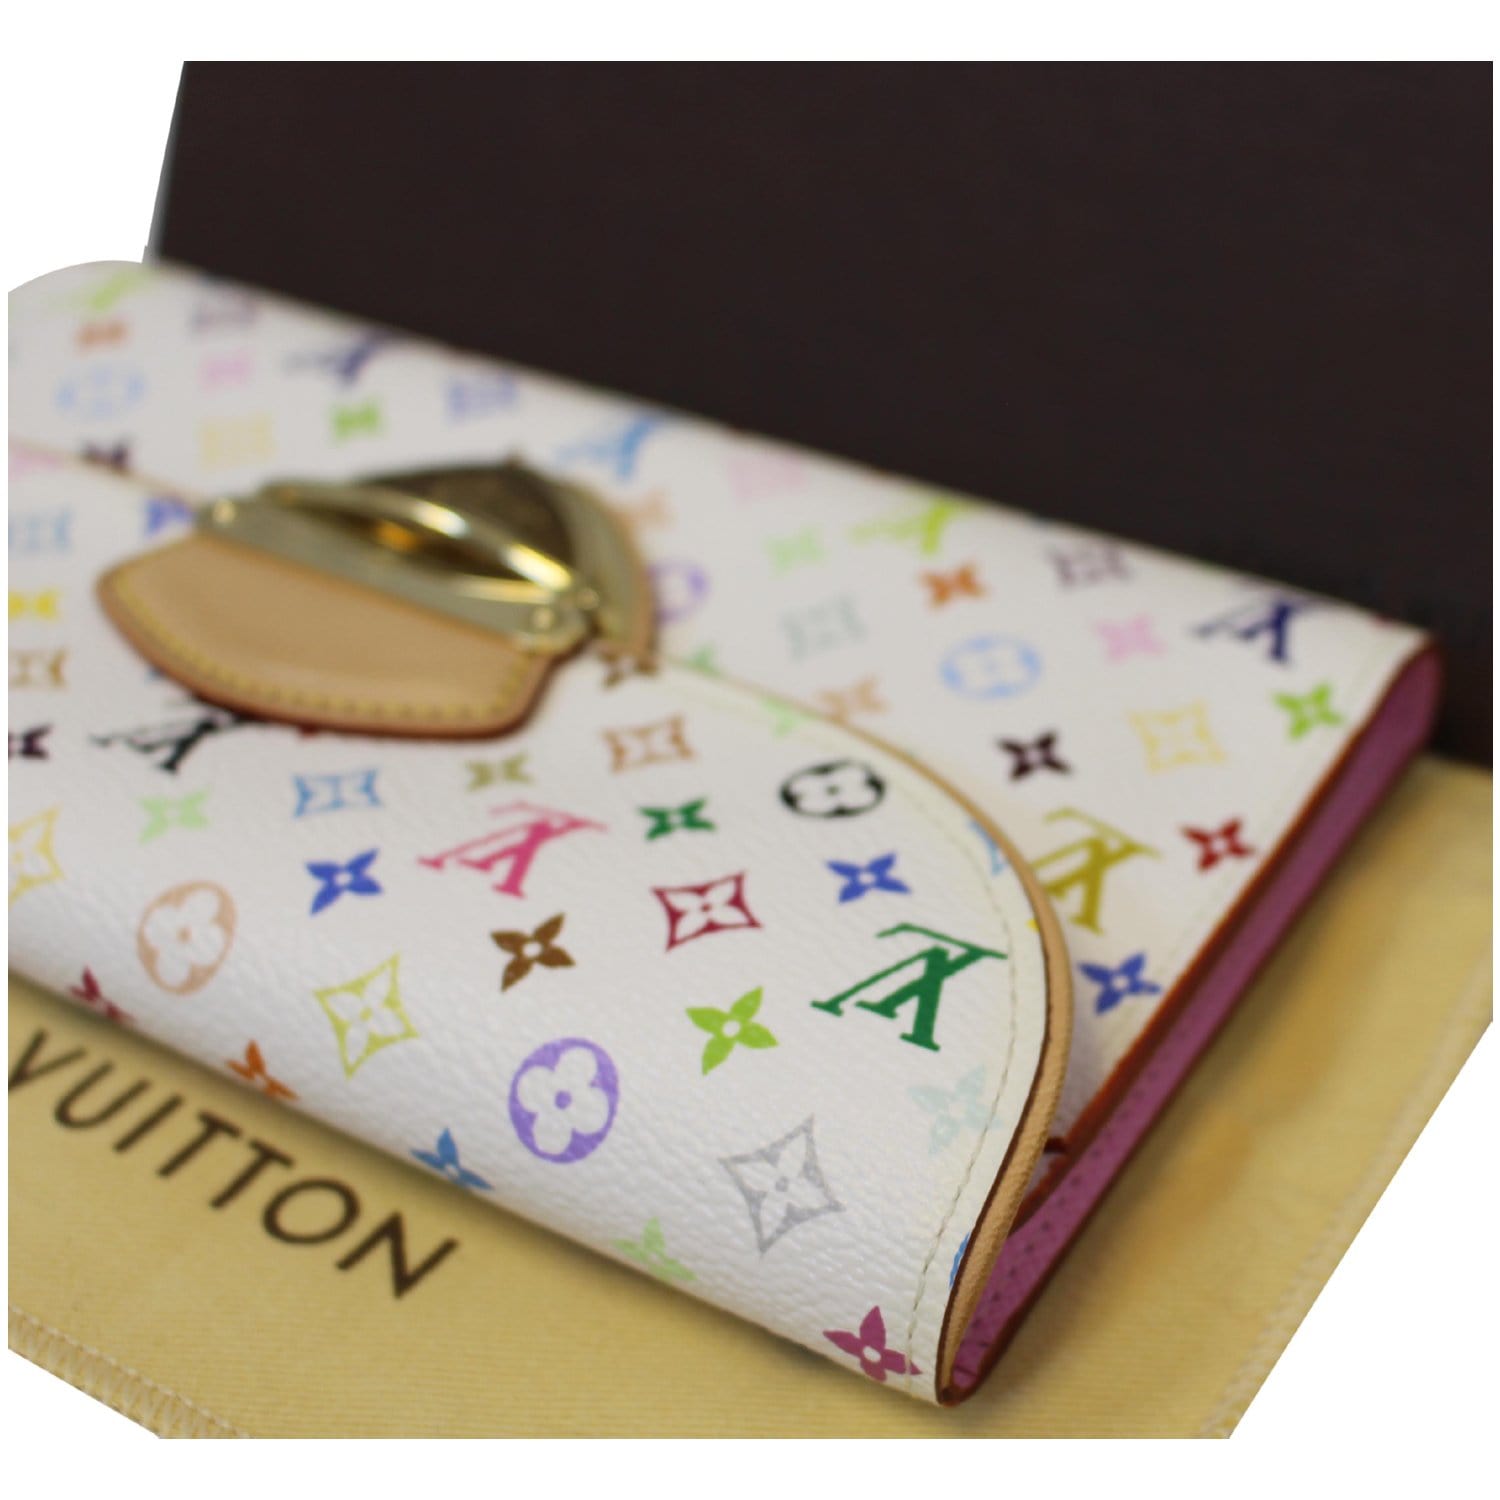 Кошелек Louis Vuitton Monogram Victorine Wallet купить в Киеве